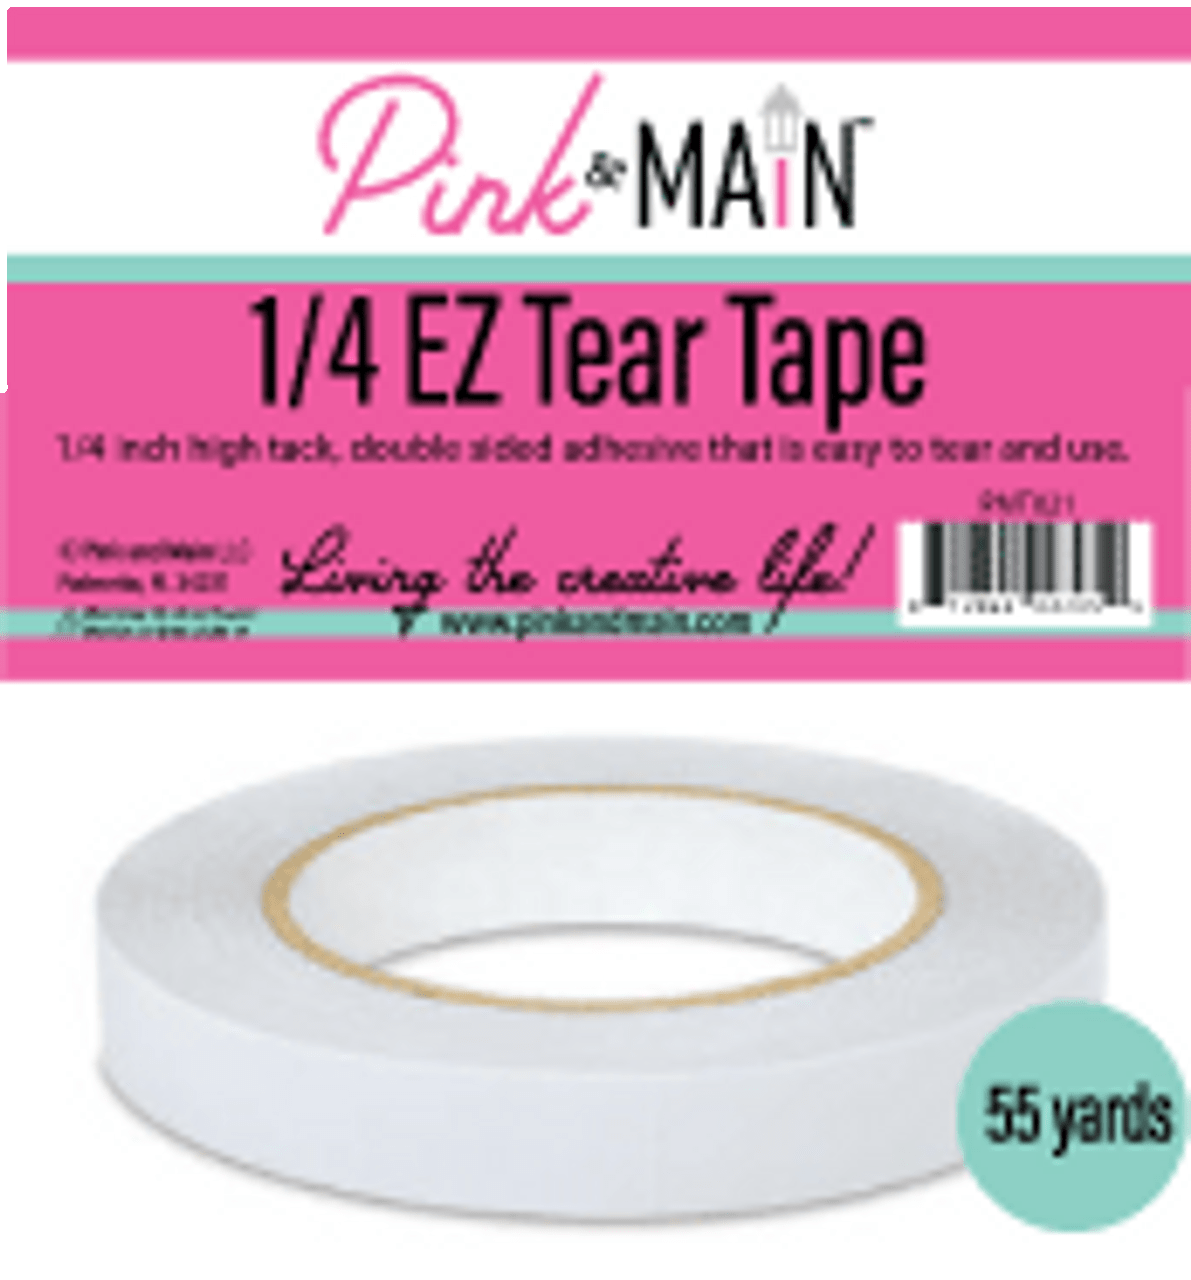 1/4 inch EZ Tear Tape